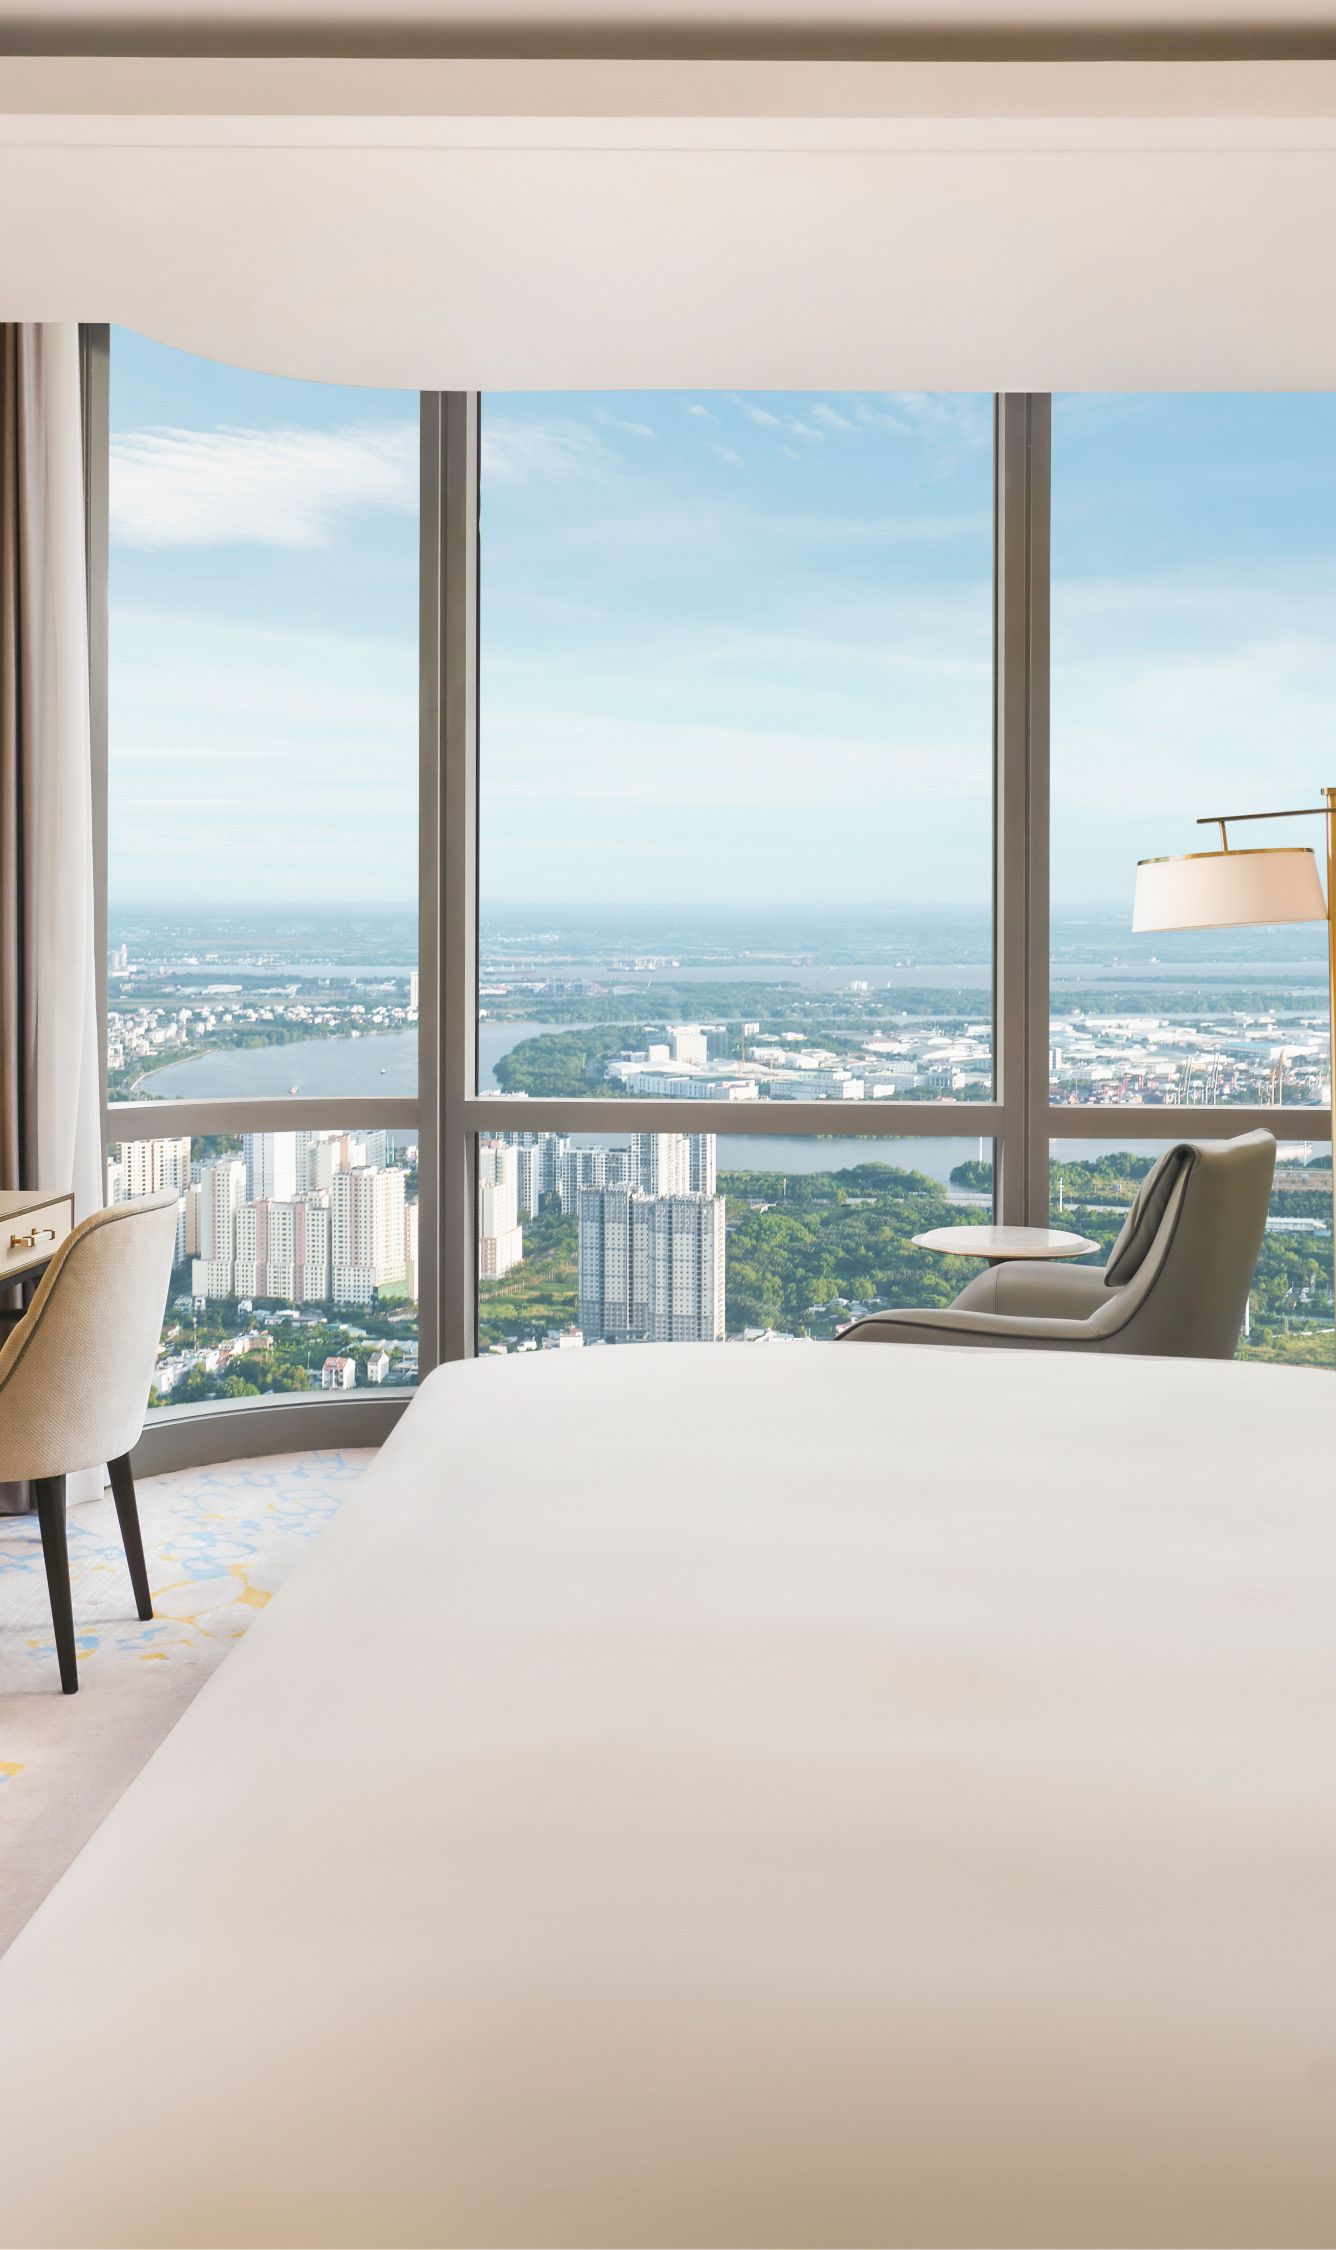 Khách sạn tại TP. Hồ Chí Minh - Với lựa chọn đa dạng từ khách sạn cao cấp đến những homestay xinh xắn, bạn sẽ tìm thấy điểm nghỉ dưỡng phù hợp ở thành phố sôi động này. Cùng trải nghiệm những tiện nghi hiện đại và dịch vụ chuyên nghiệp với chi phí phải chăng để có kỳ nghỉ đáng nhớ.